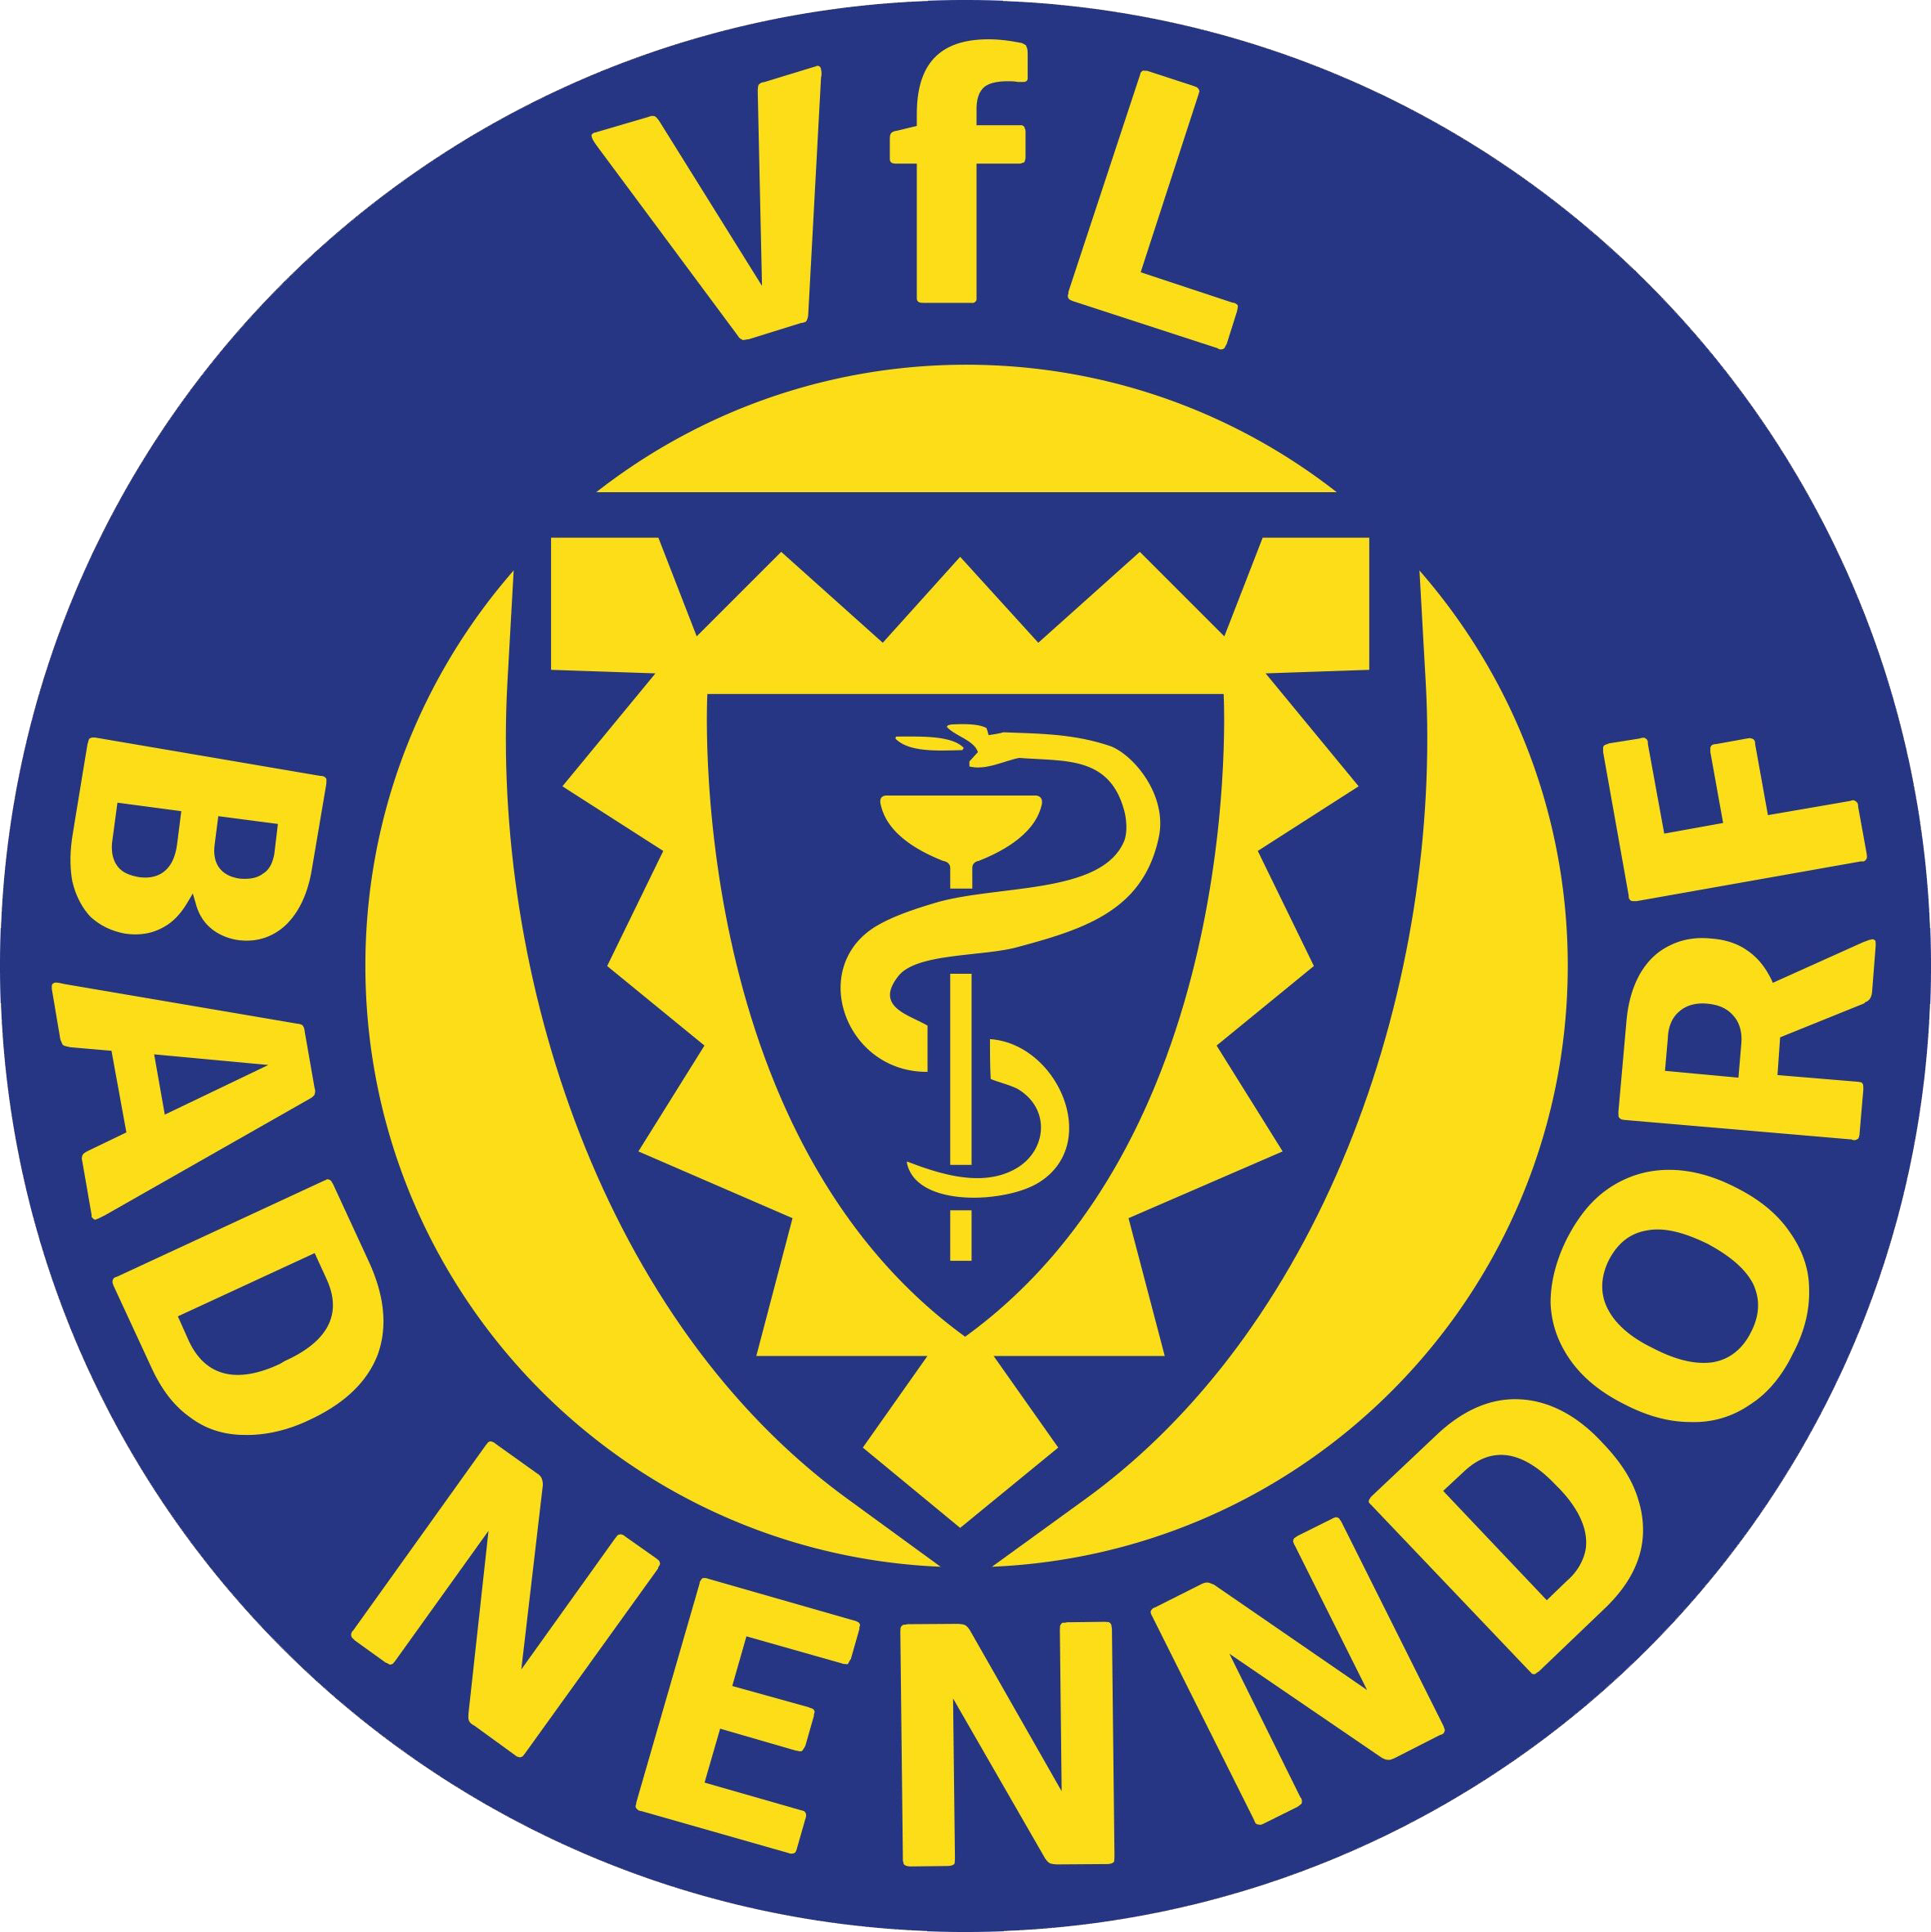 VfL Bad Nenndorf